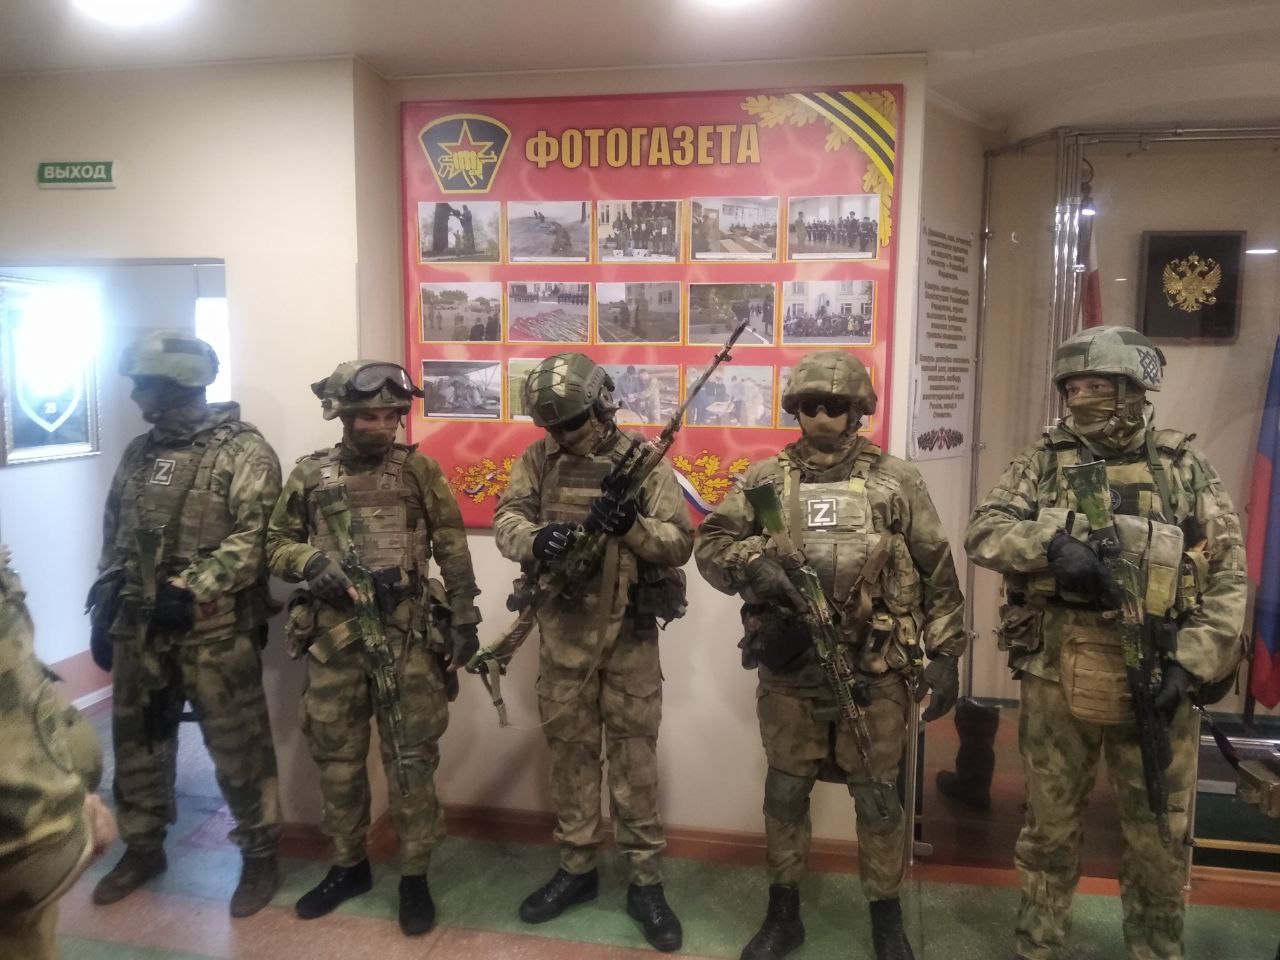 23 отряд спецназа в Челябинской области отмечает юбилей